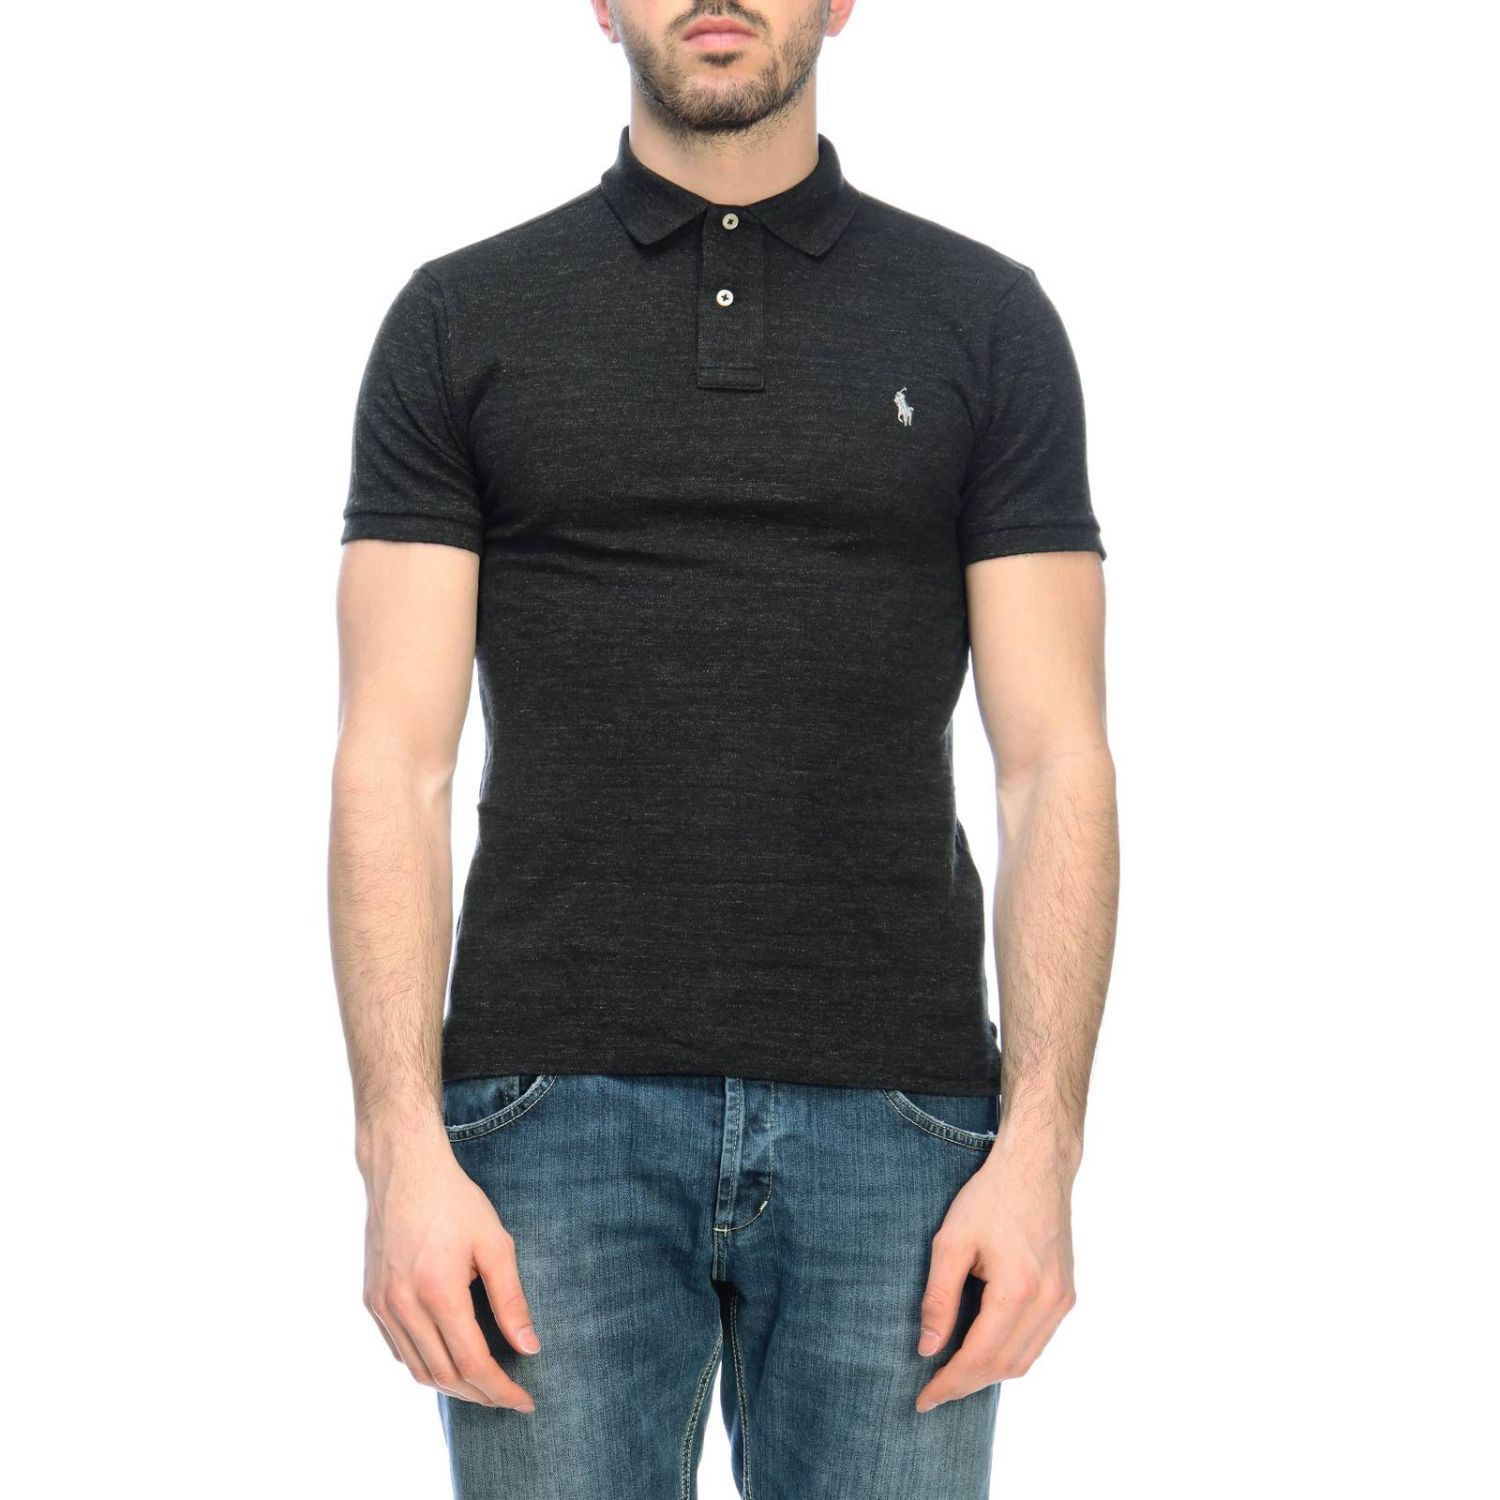 Polo Ralph Lauren Outlet: t-shirt for man - Black | Polo Ralph Lauren t ...